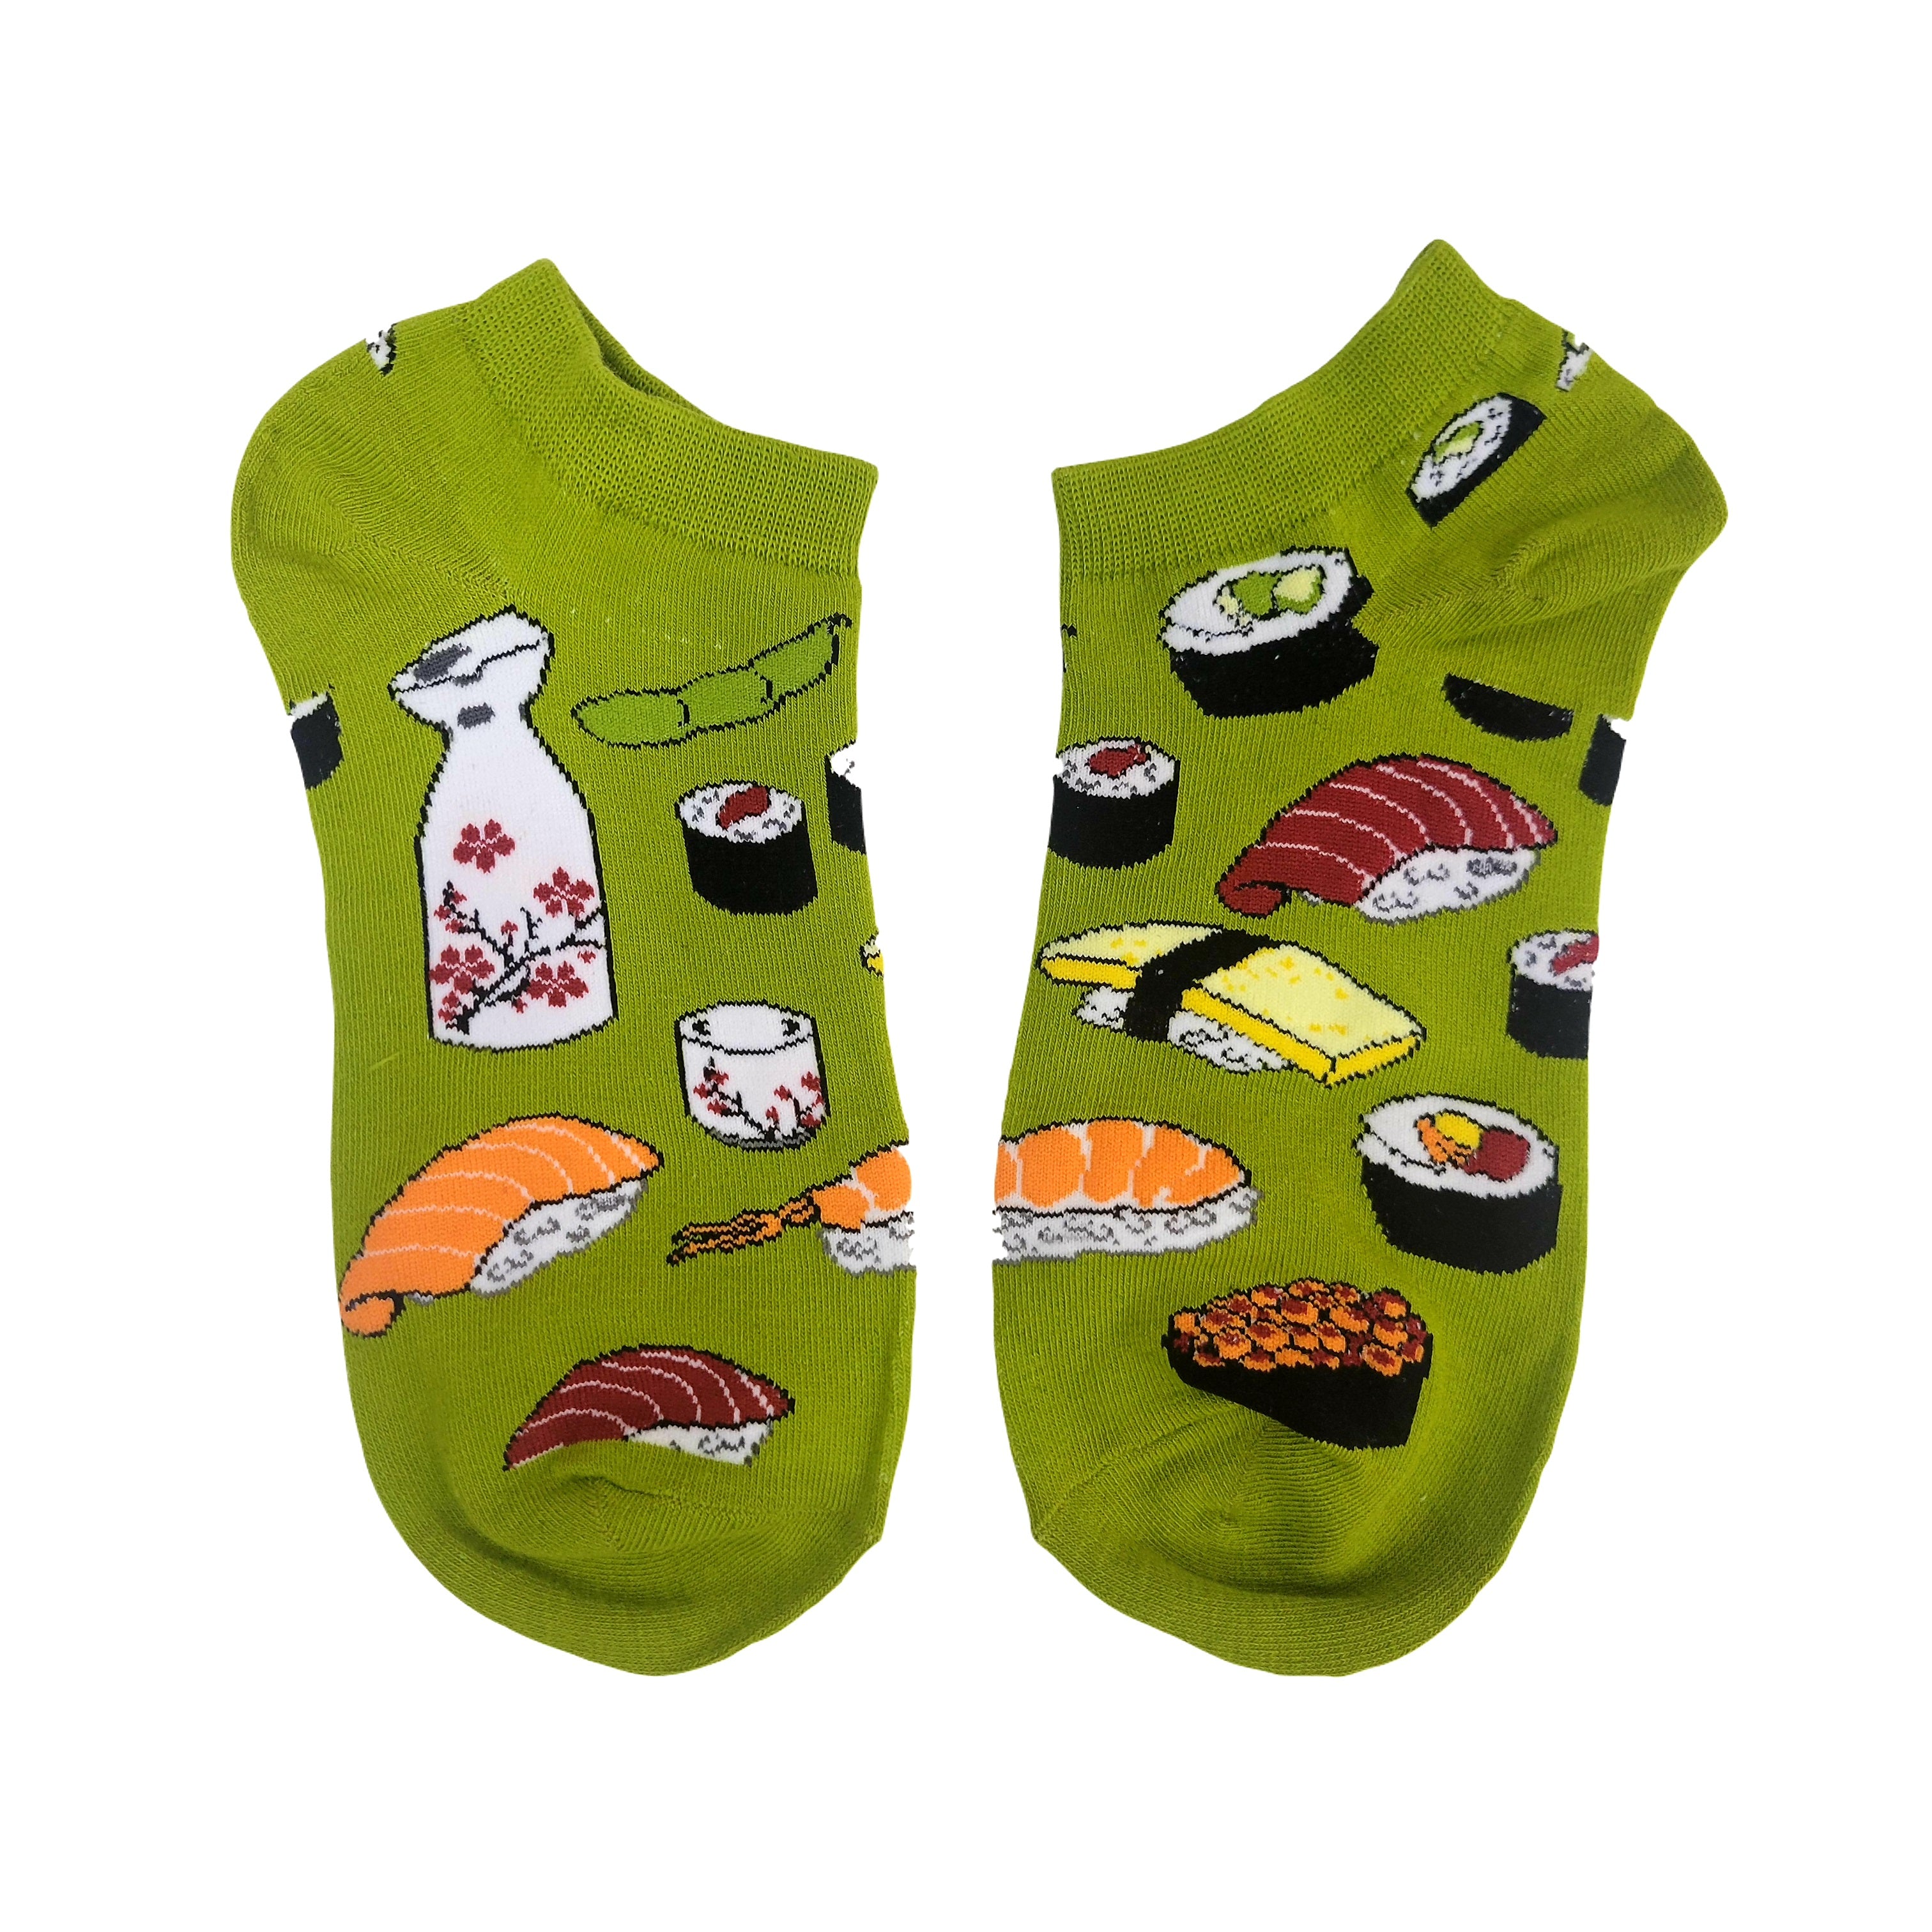 Sushi Ankle Socks from the Sock Panda (Men's & Women's Sizes)